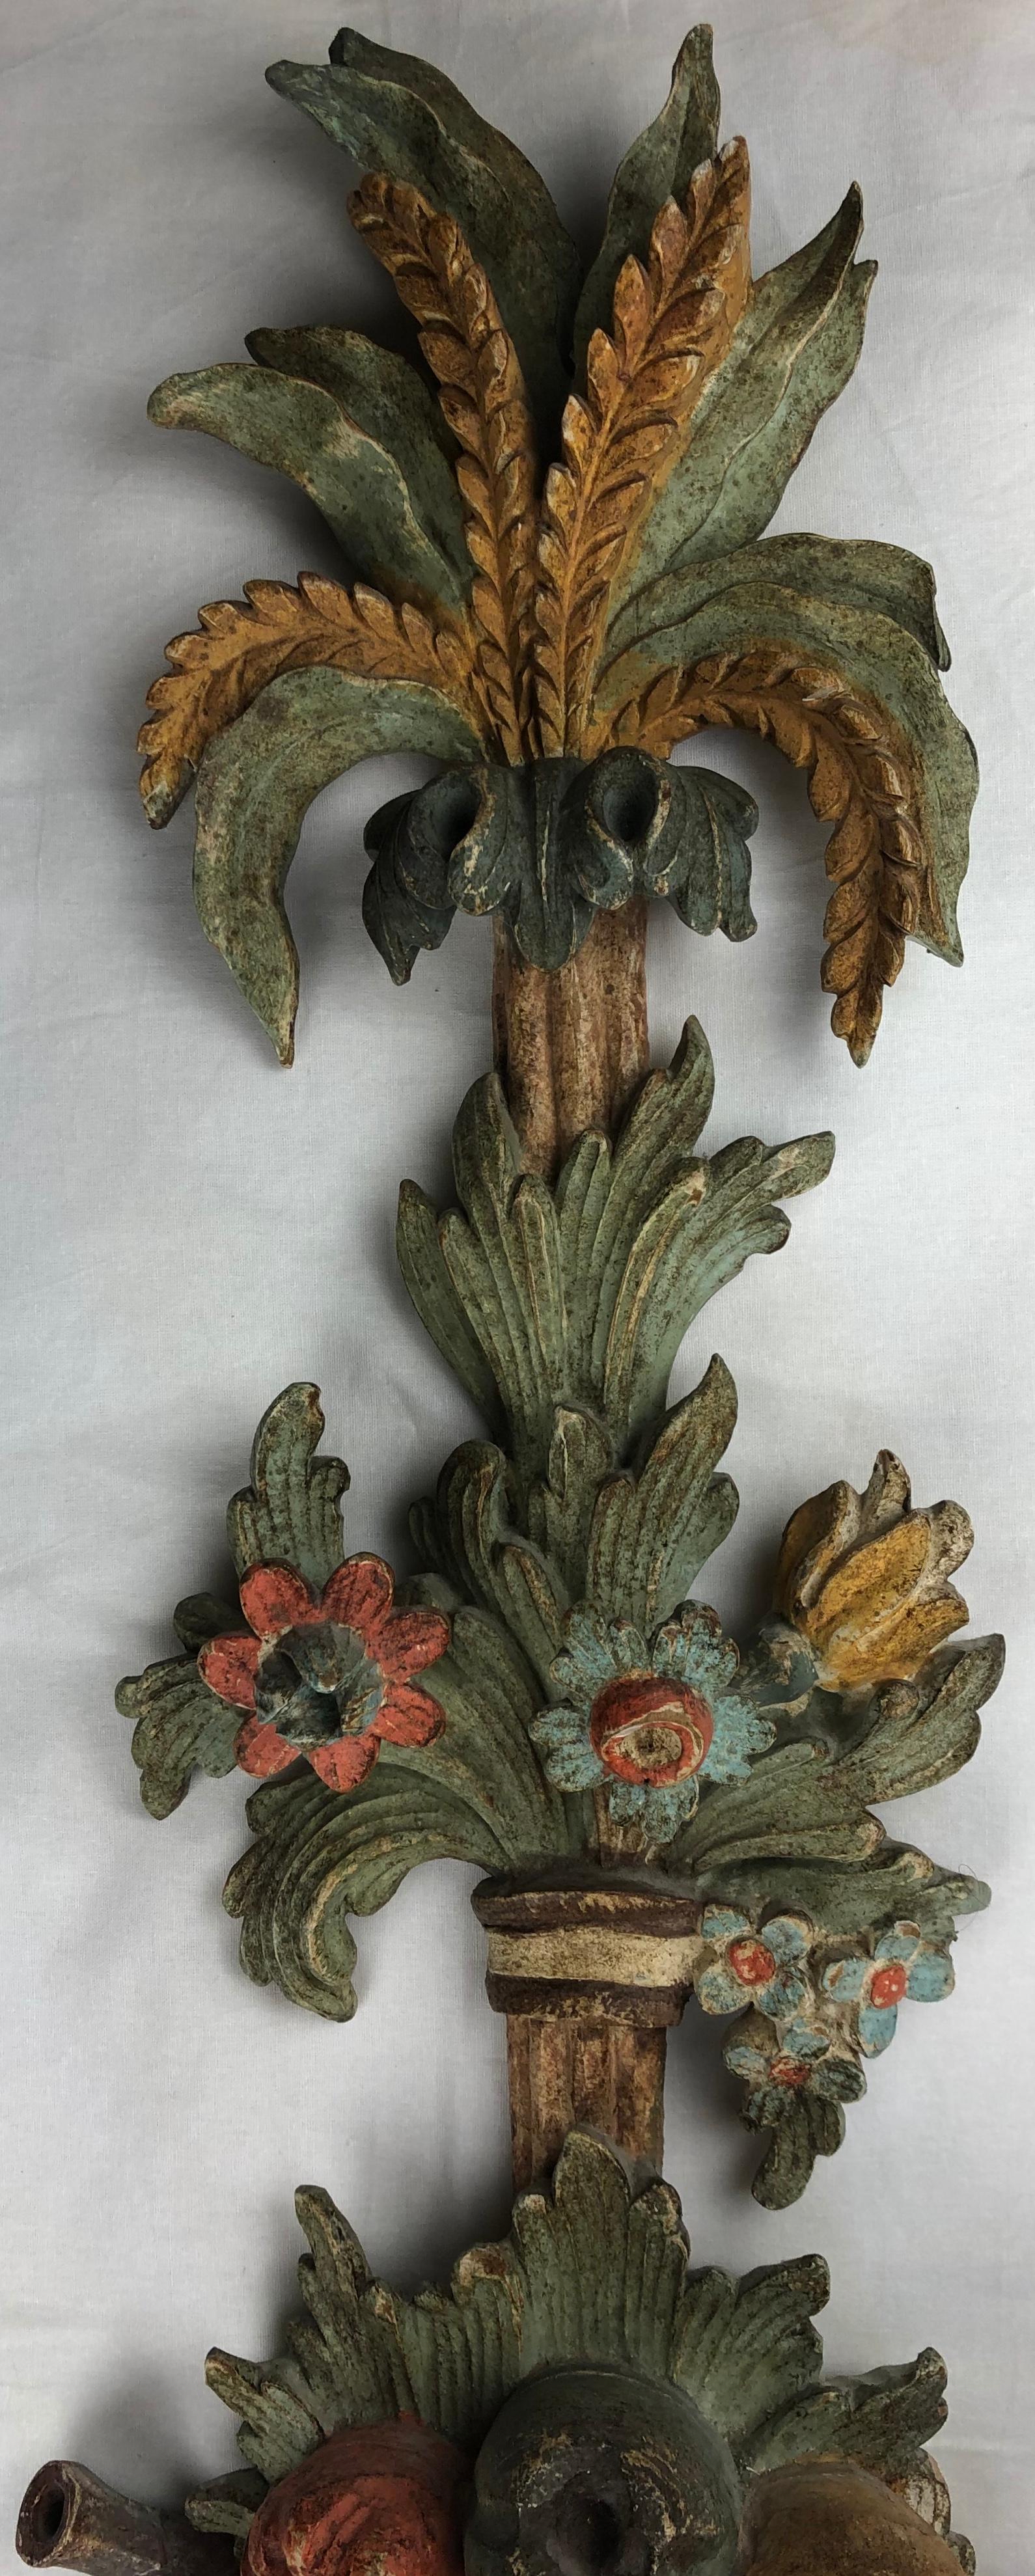 Magnifique applique, avec de remarquables motifs et détails floraux et de feuillage. L'applique en bois est sculptée à la main et date probablement des années 1930-1940.

Récemment recâblé et en parfait état de fonctionnement. 

Mesures : 39 3/4